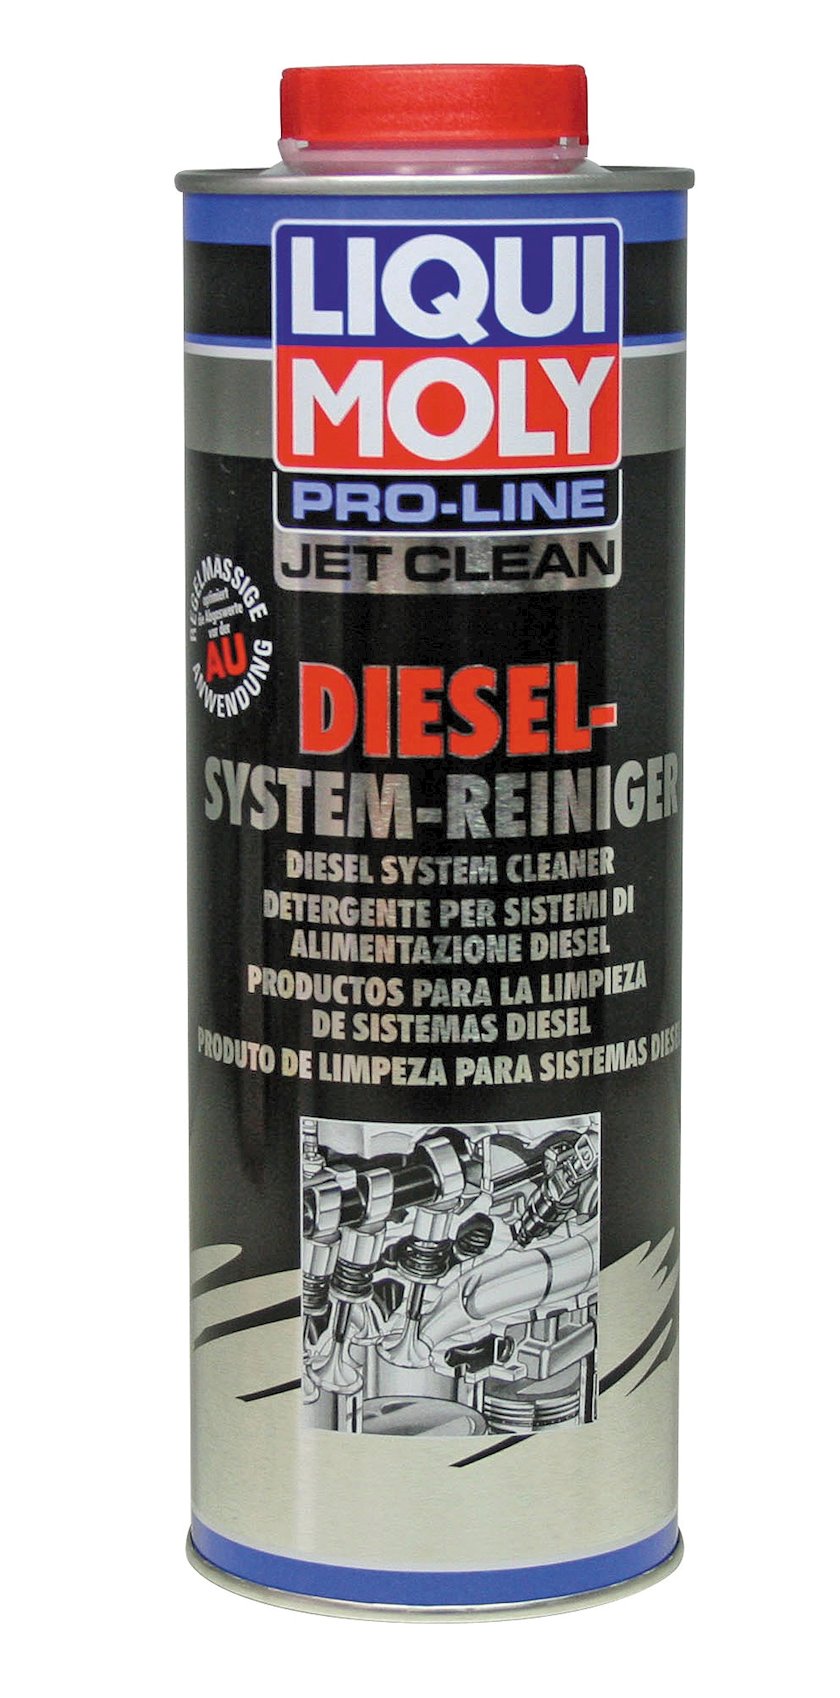 LIQUI MOLY Pro-Line JetClean Diesel-System-Reiniger 1 Liter